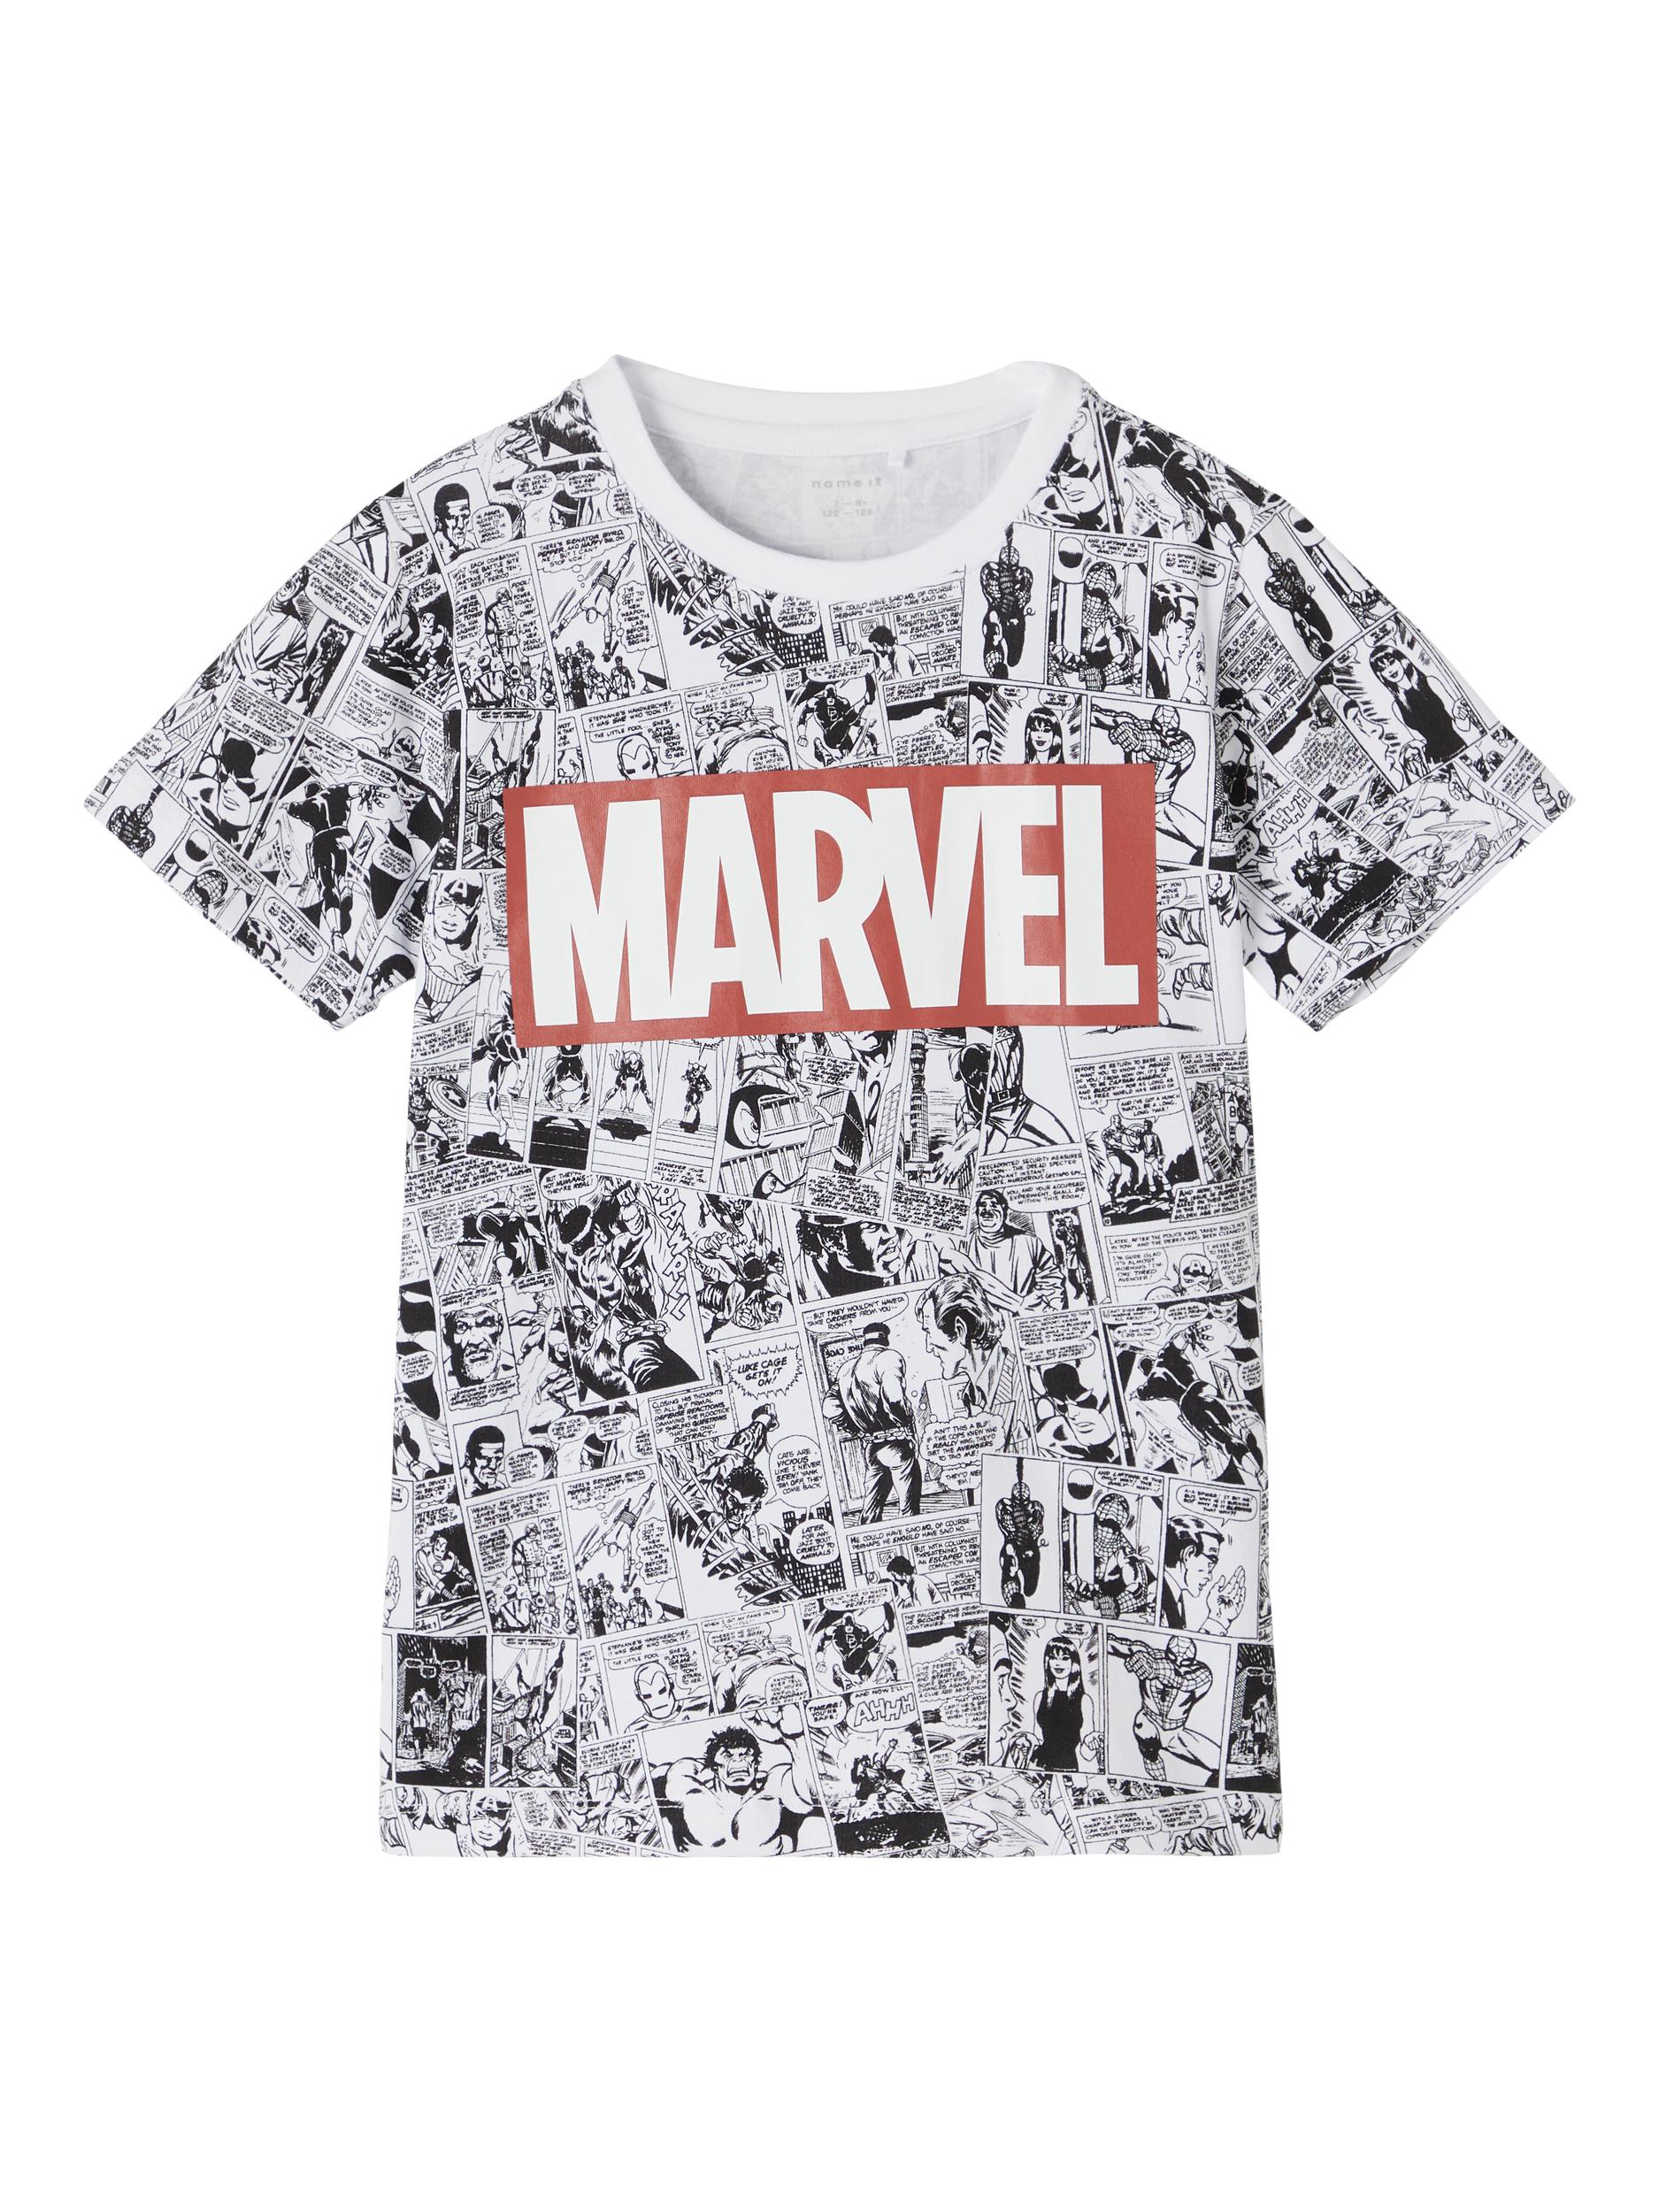  Marvel Kaptan T-Shirt